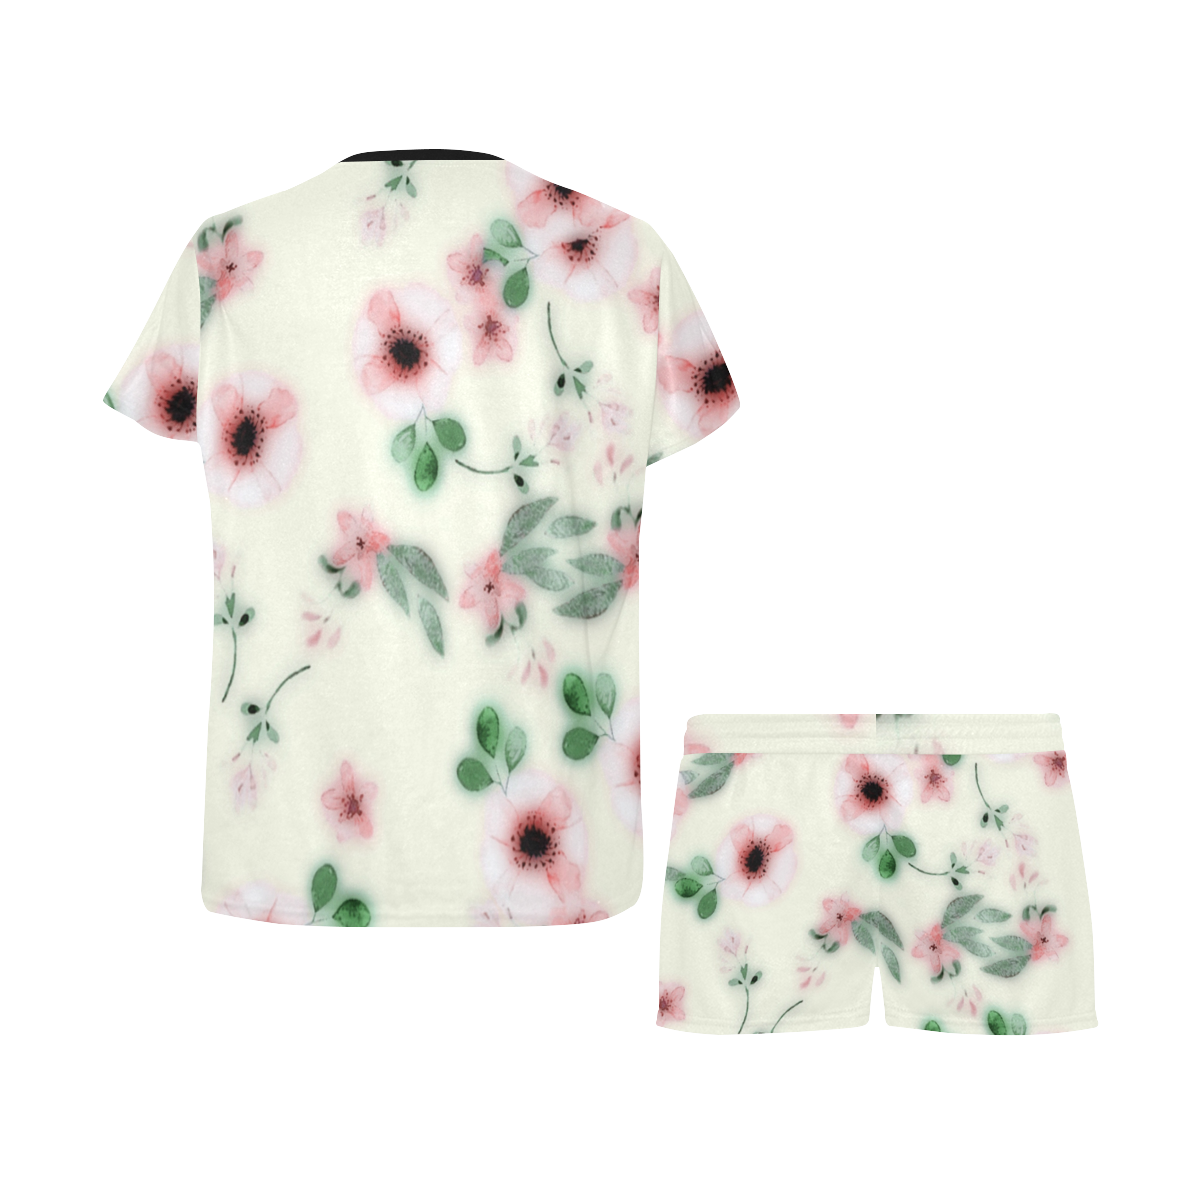 floral past Women's Short Pajama Set